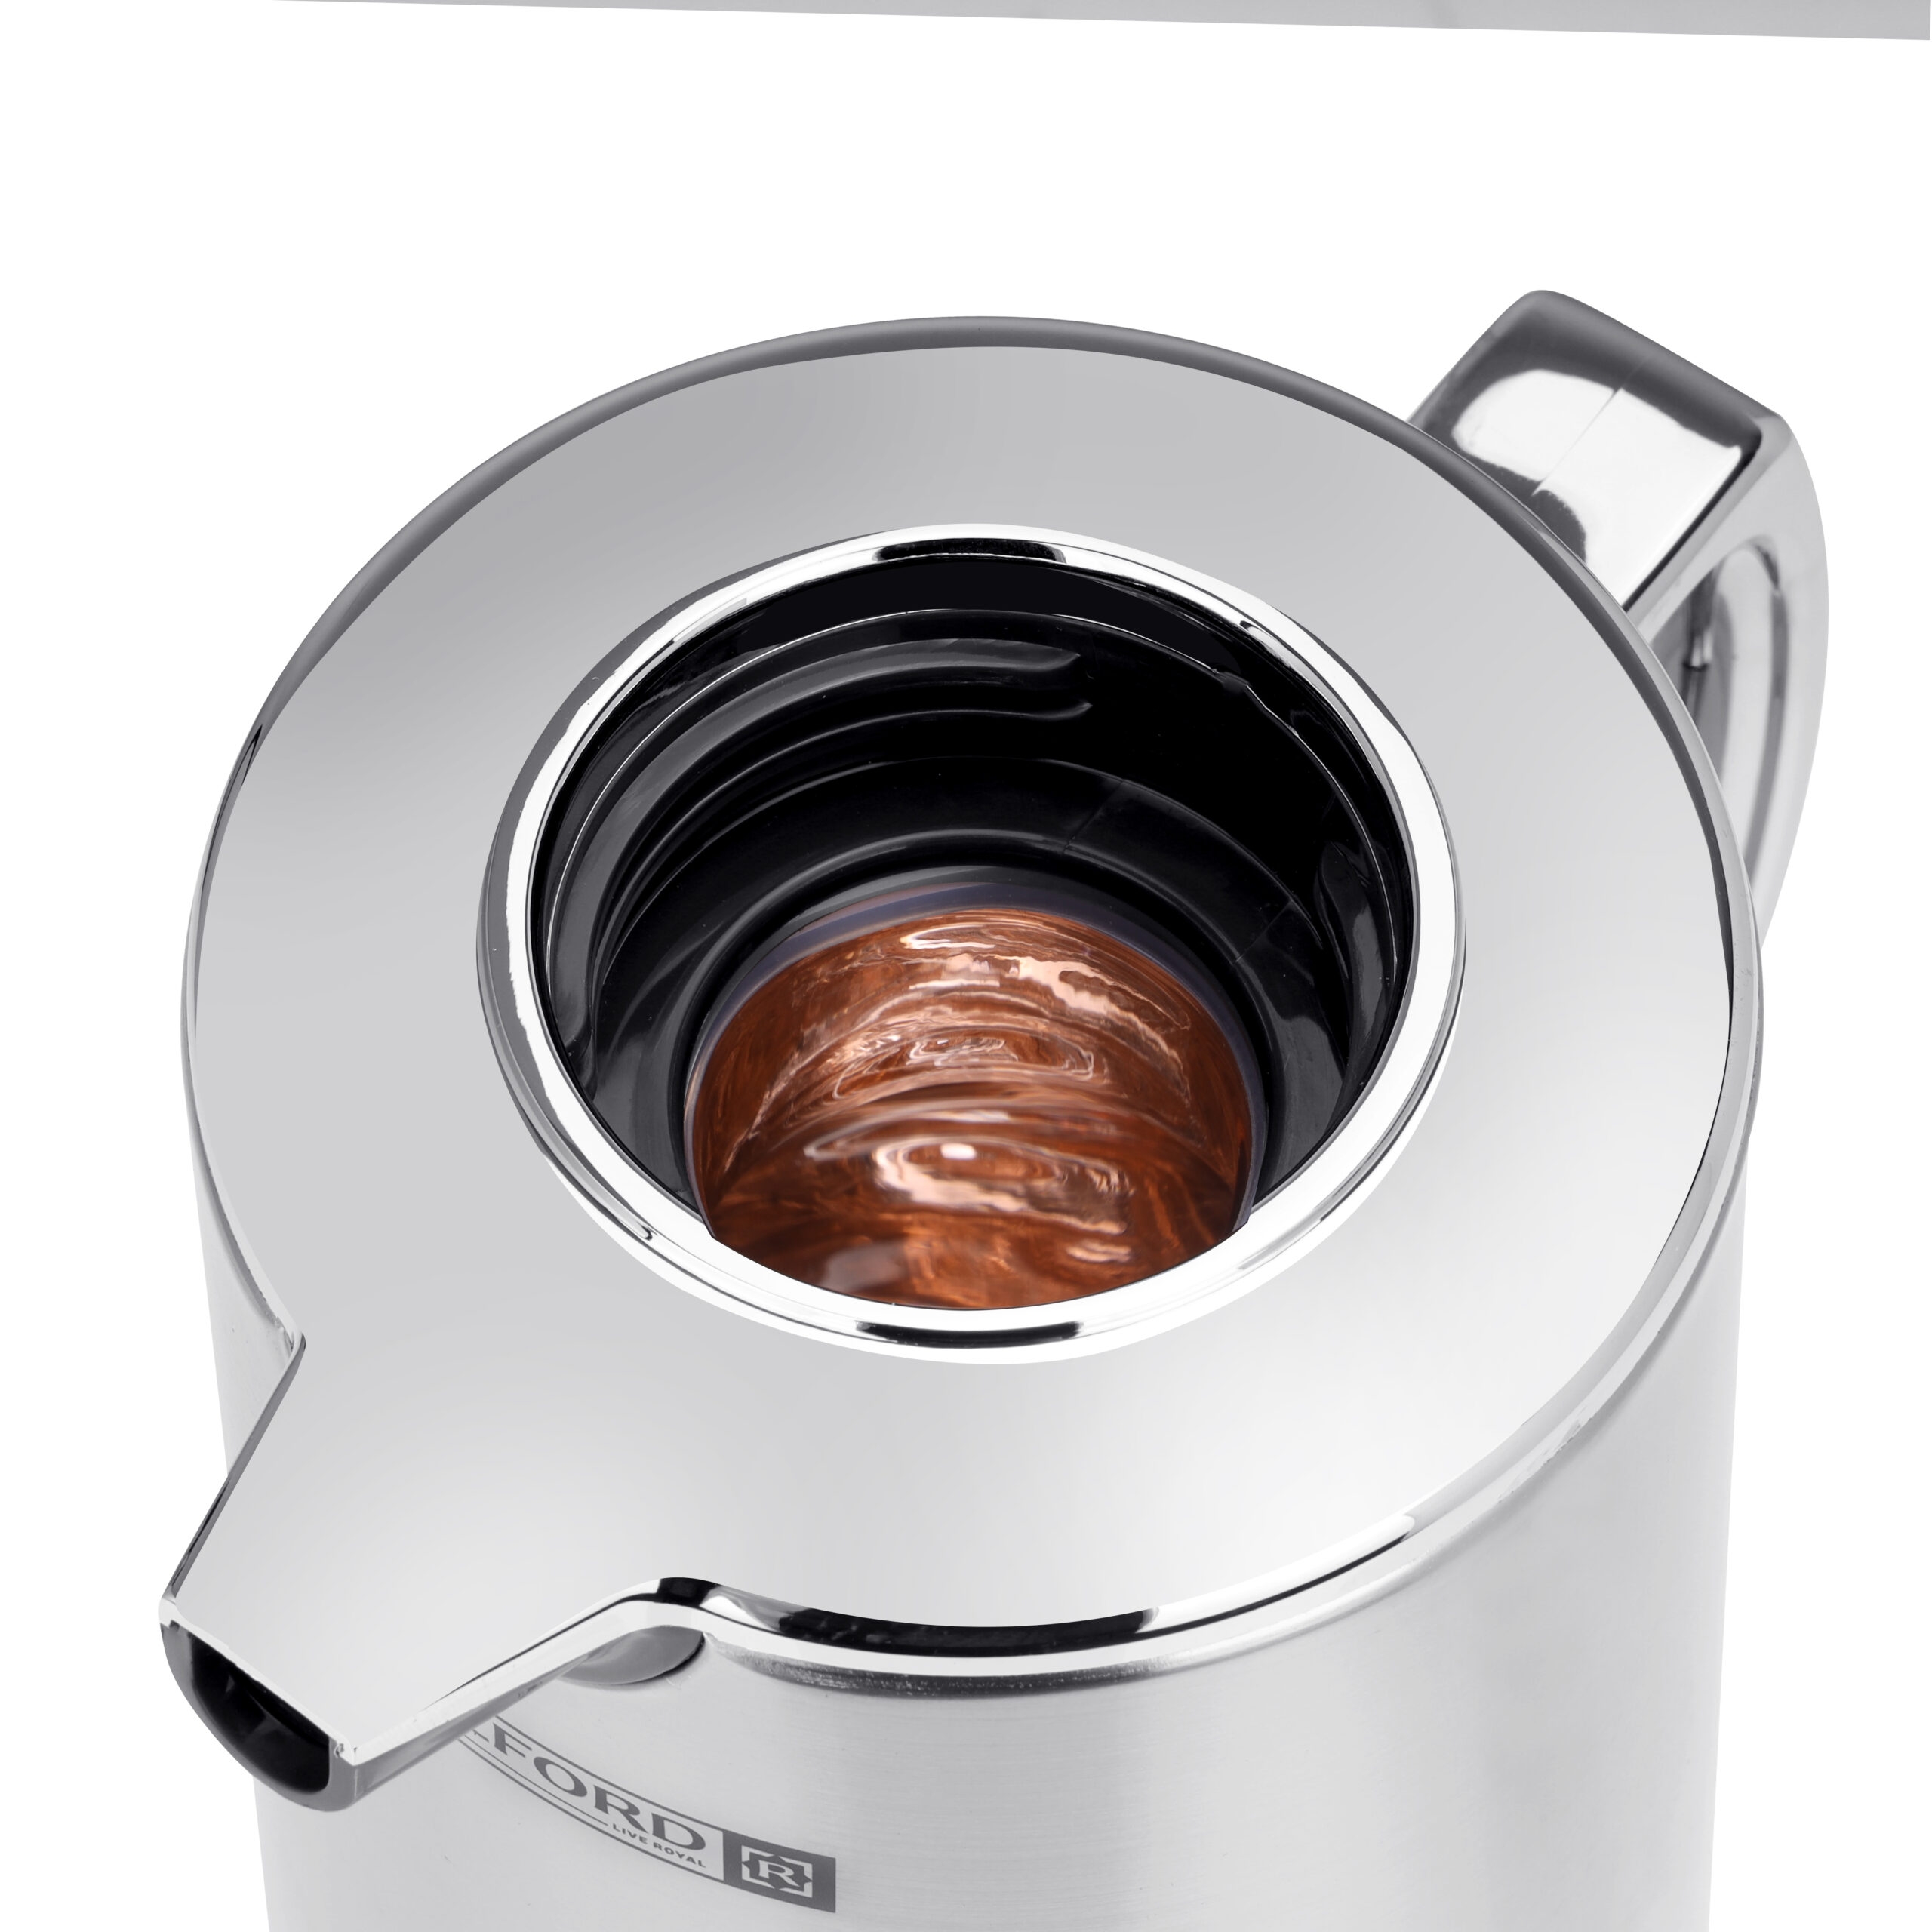 دلة قهوة حافظة للحرارة بسعة 1.6 لتر | Royalford Silver Vacuum Flask